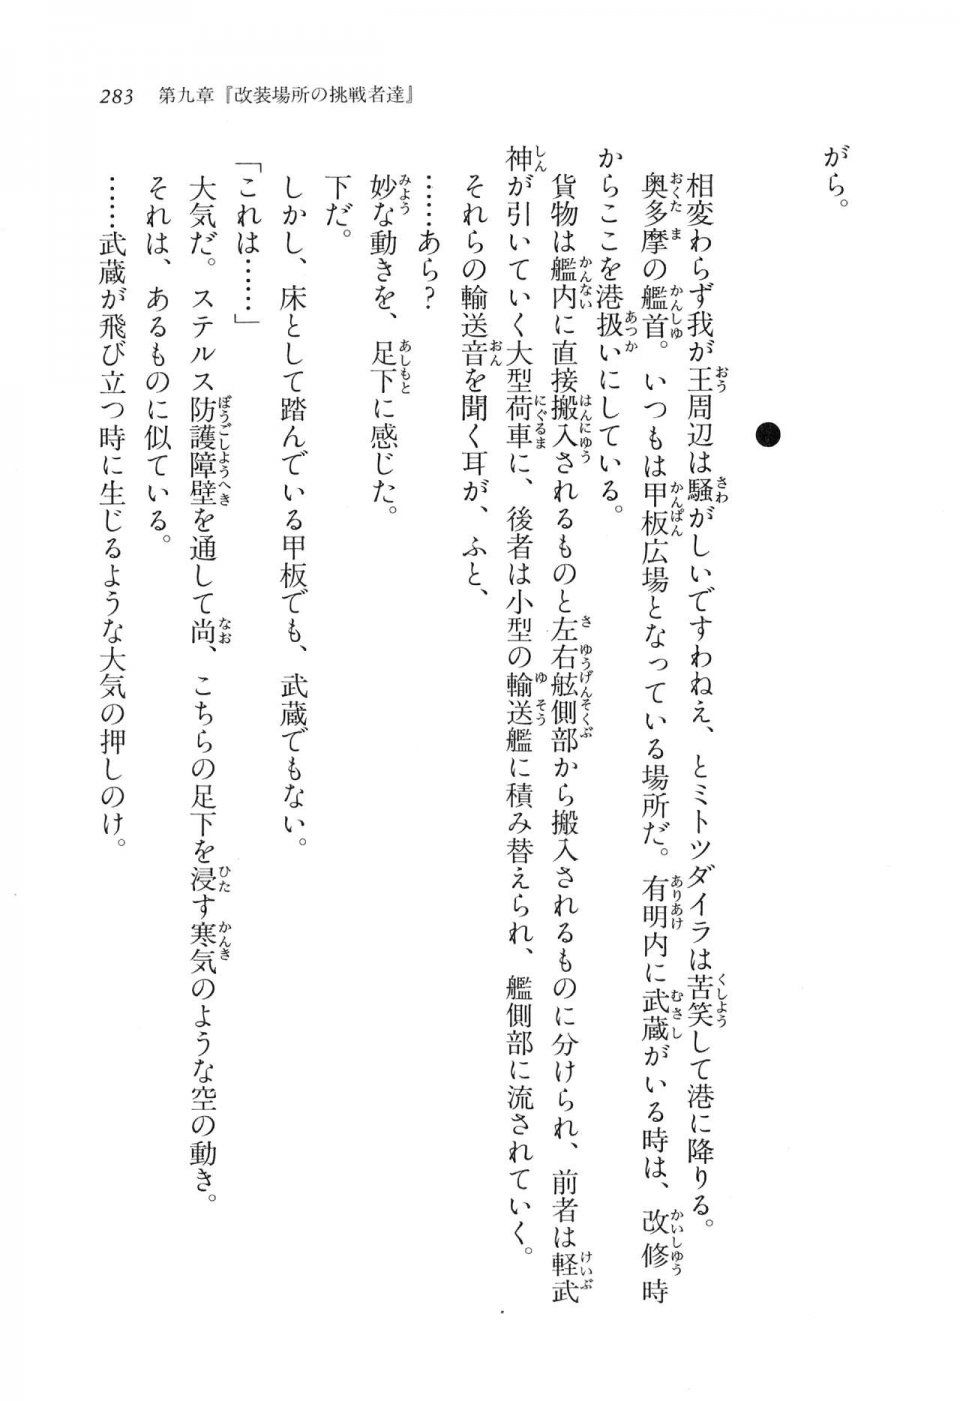 Kyoukai Senjou no Horizon LN Vol 11(5A) - Photo #283